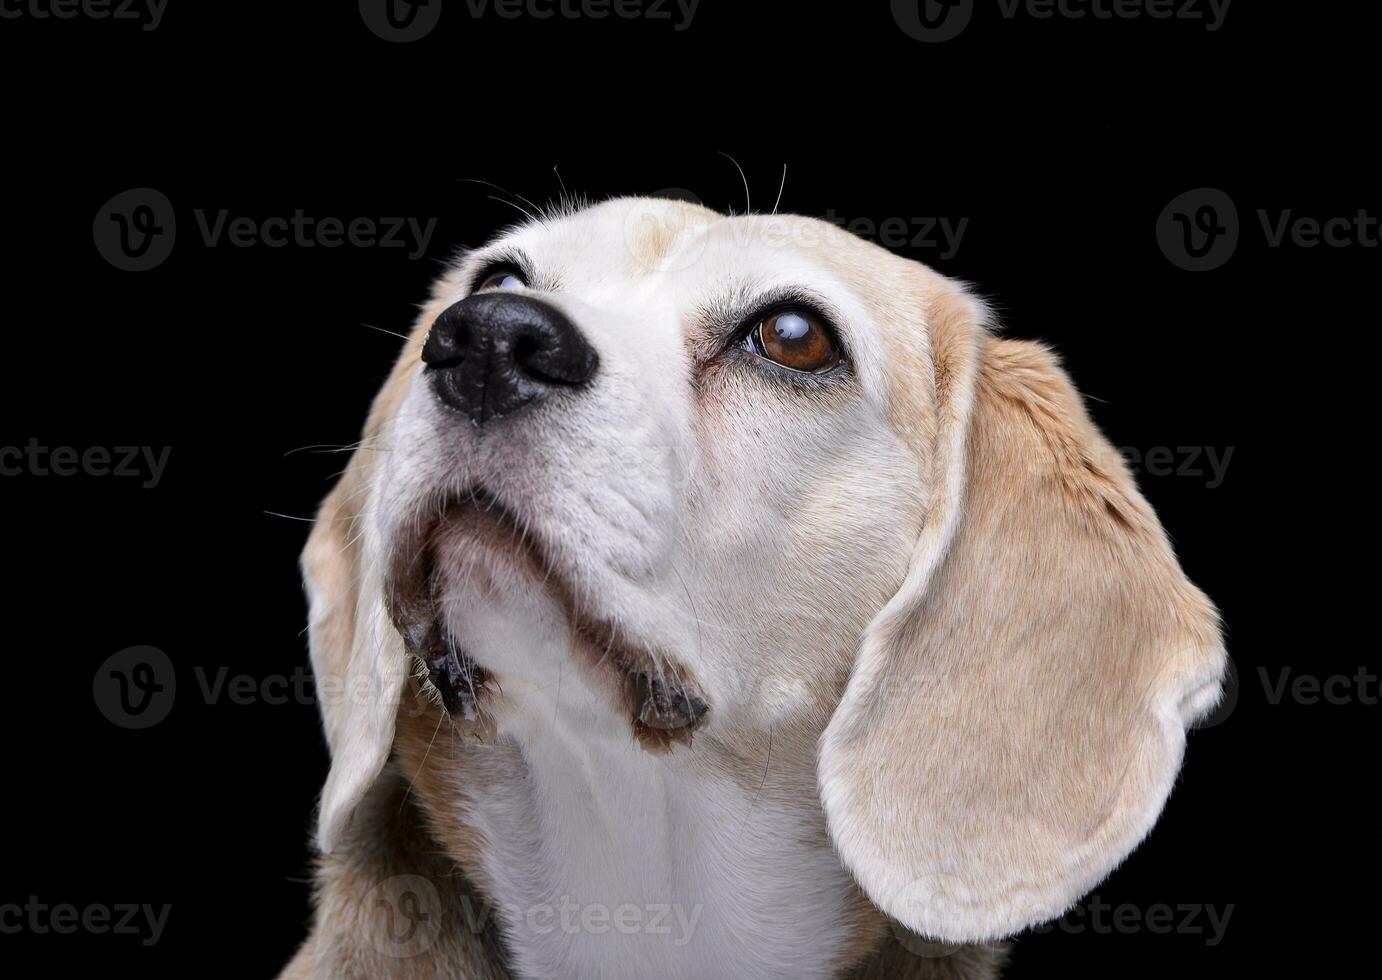 Portrait of an adorable beagle photo